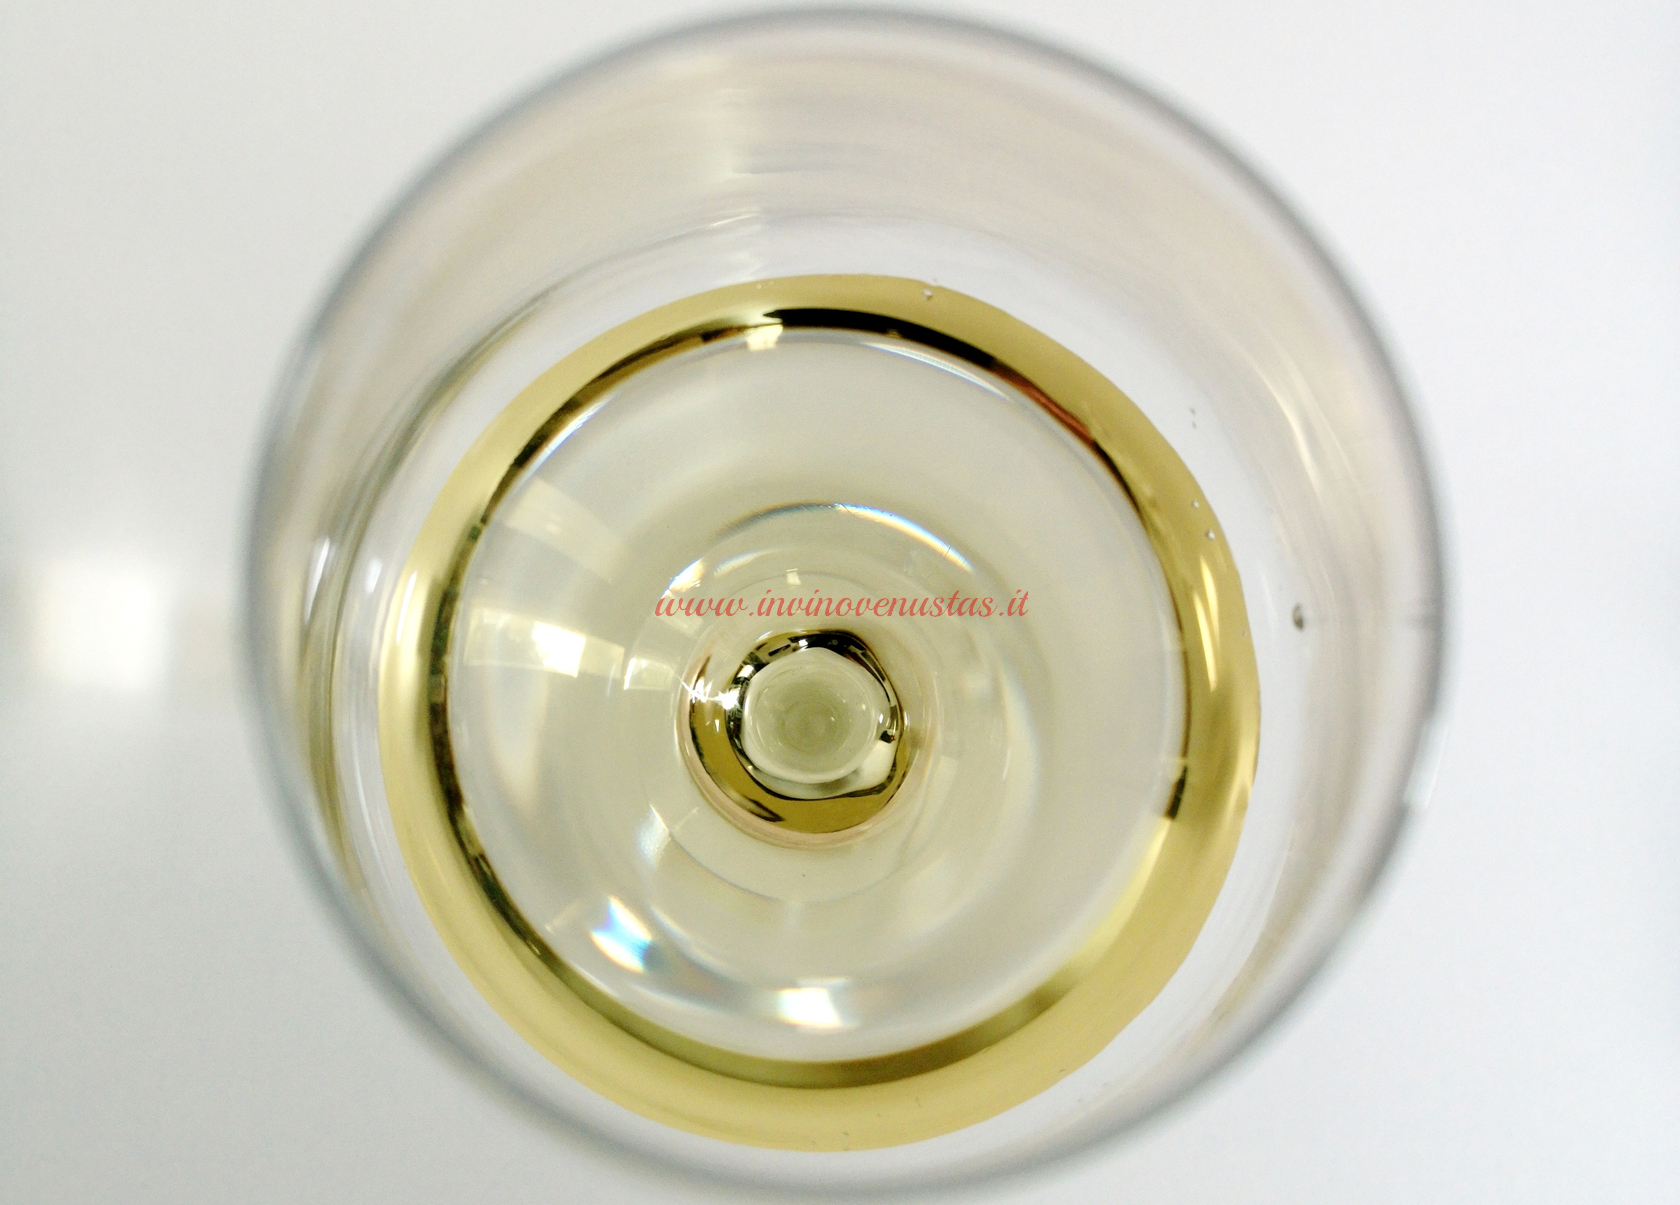 Close up calice per dettaglio colore vino bianco